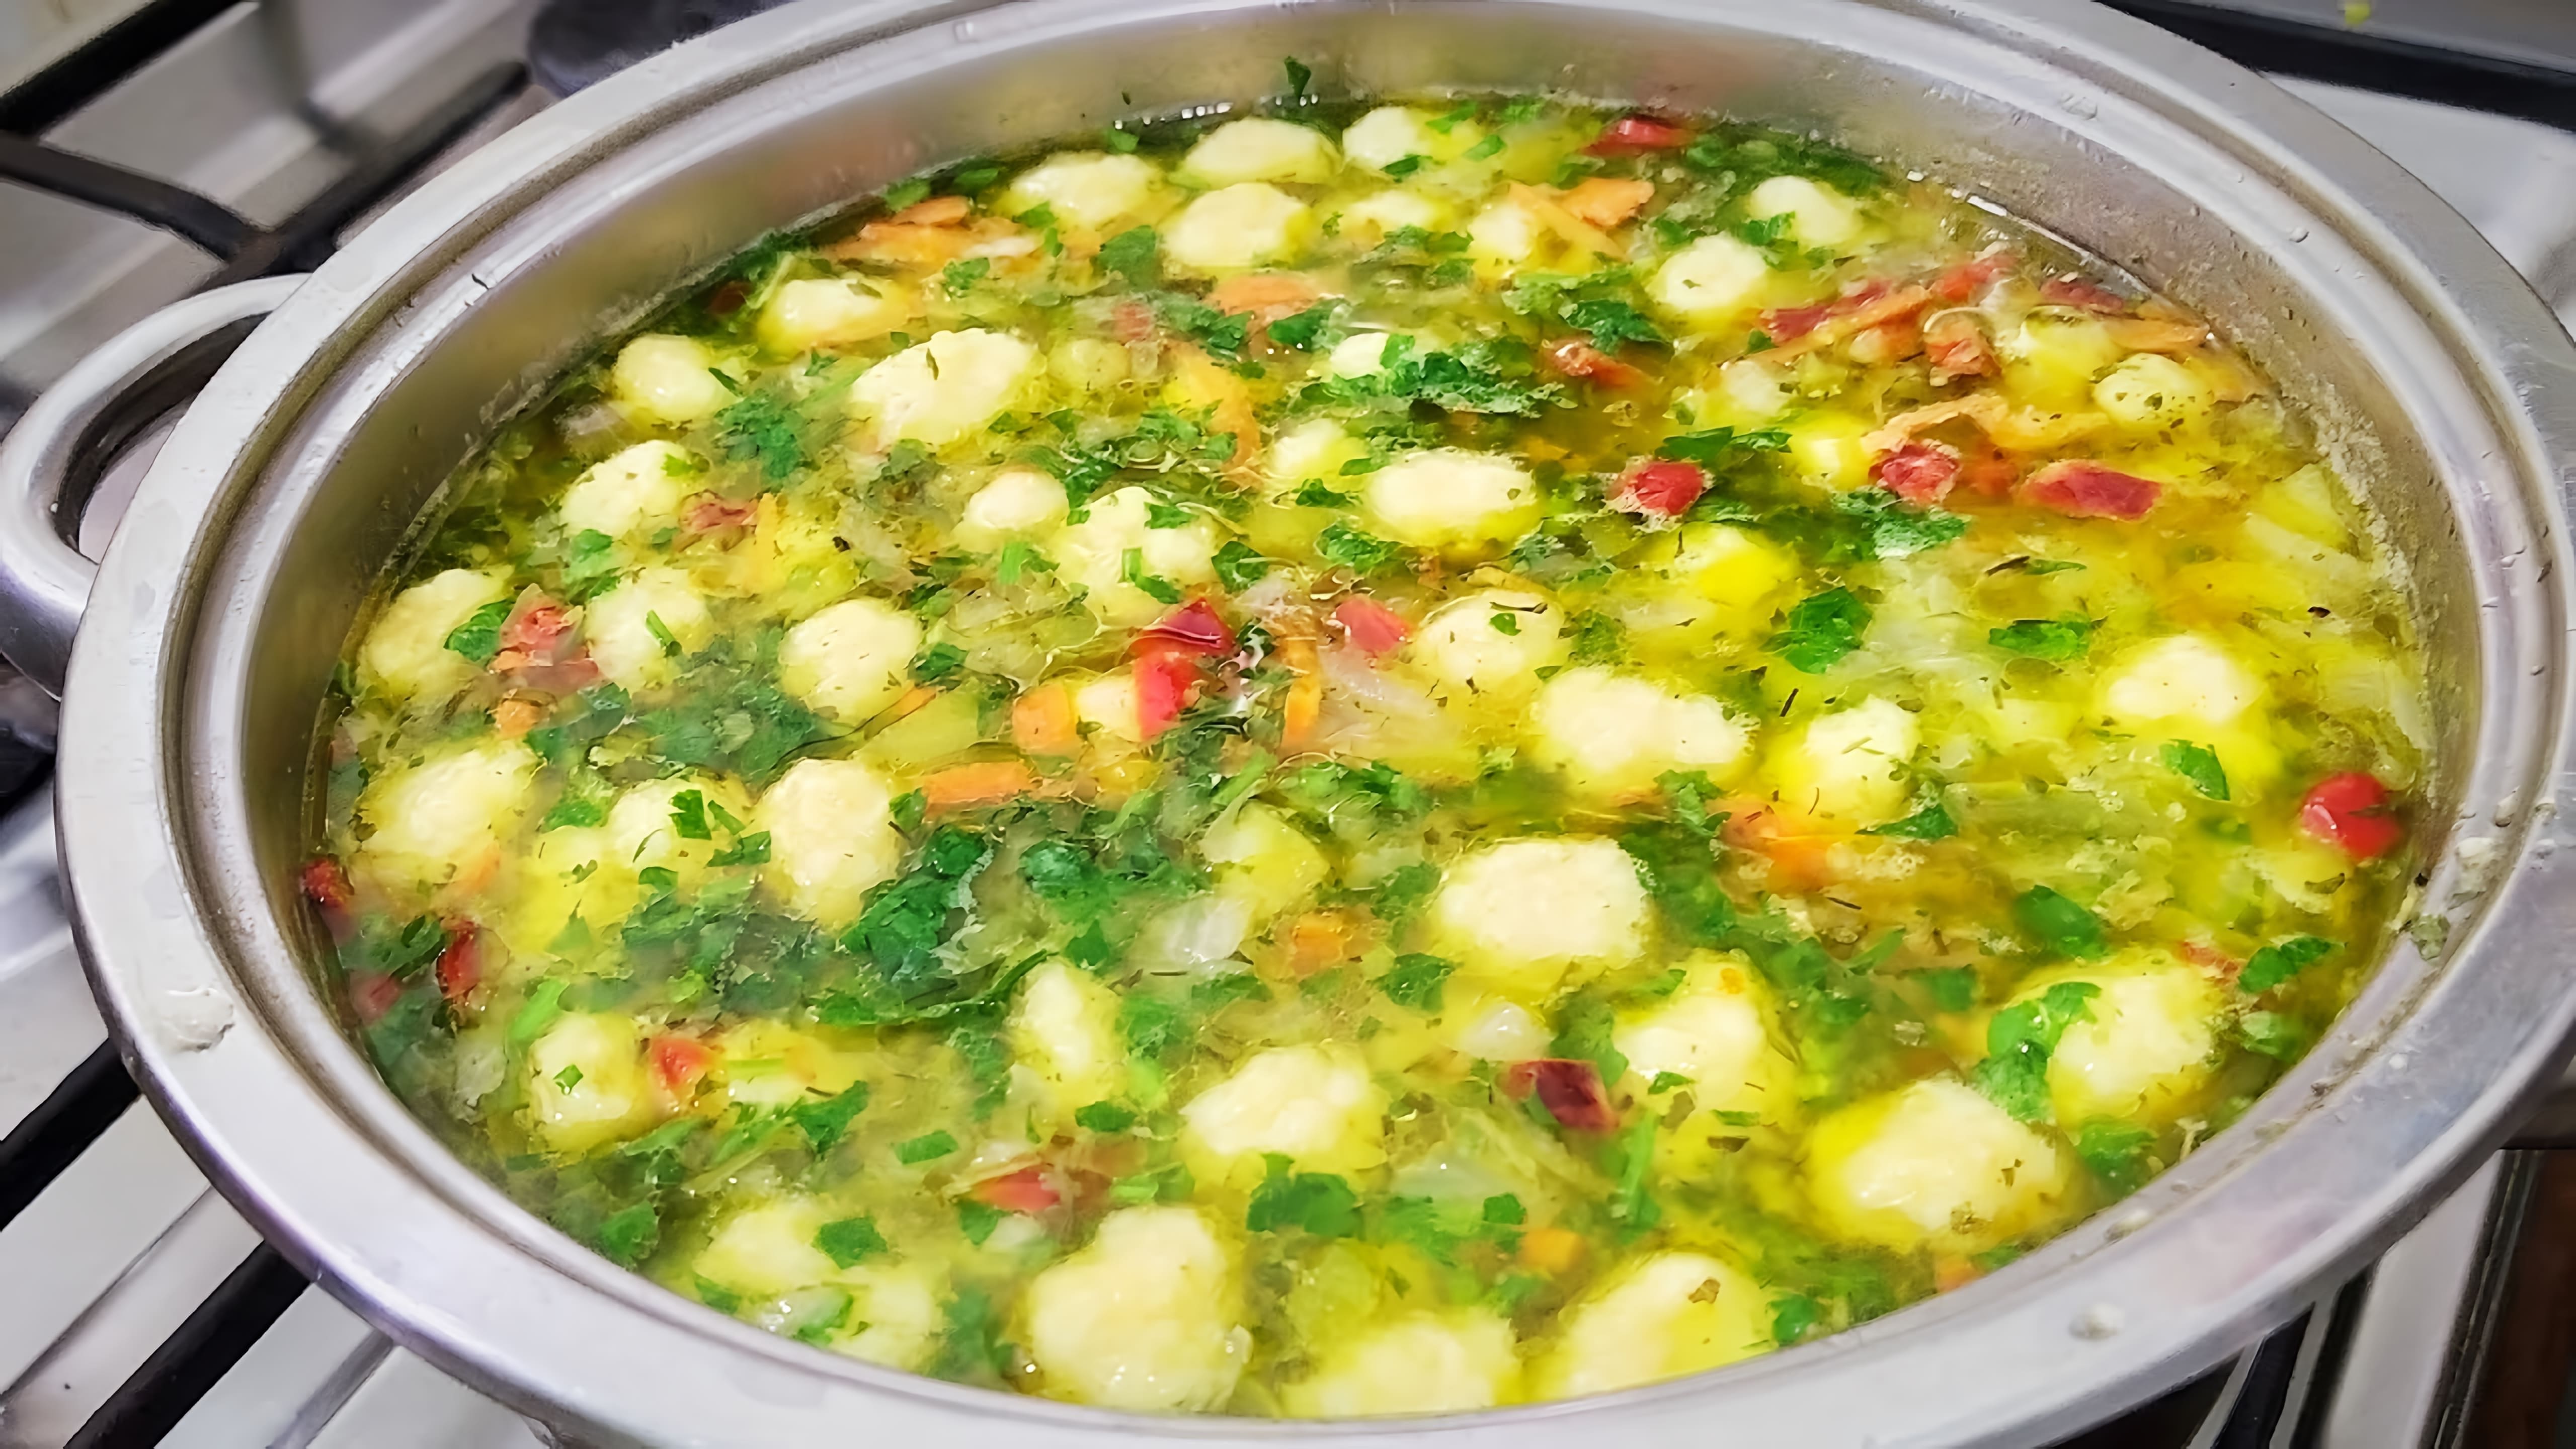 В этом видео демонстрируется рецепт приготовления супа с сырными клёцками